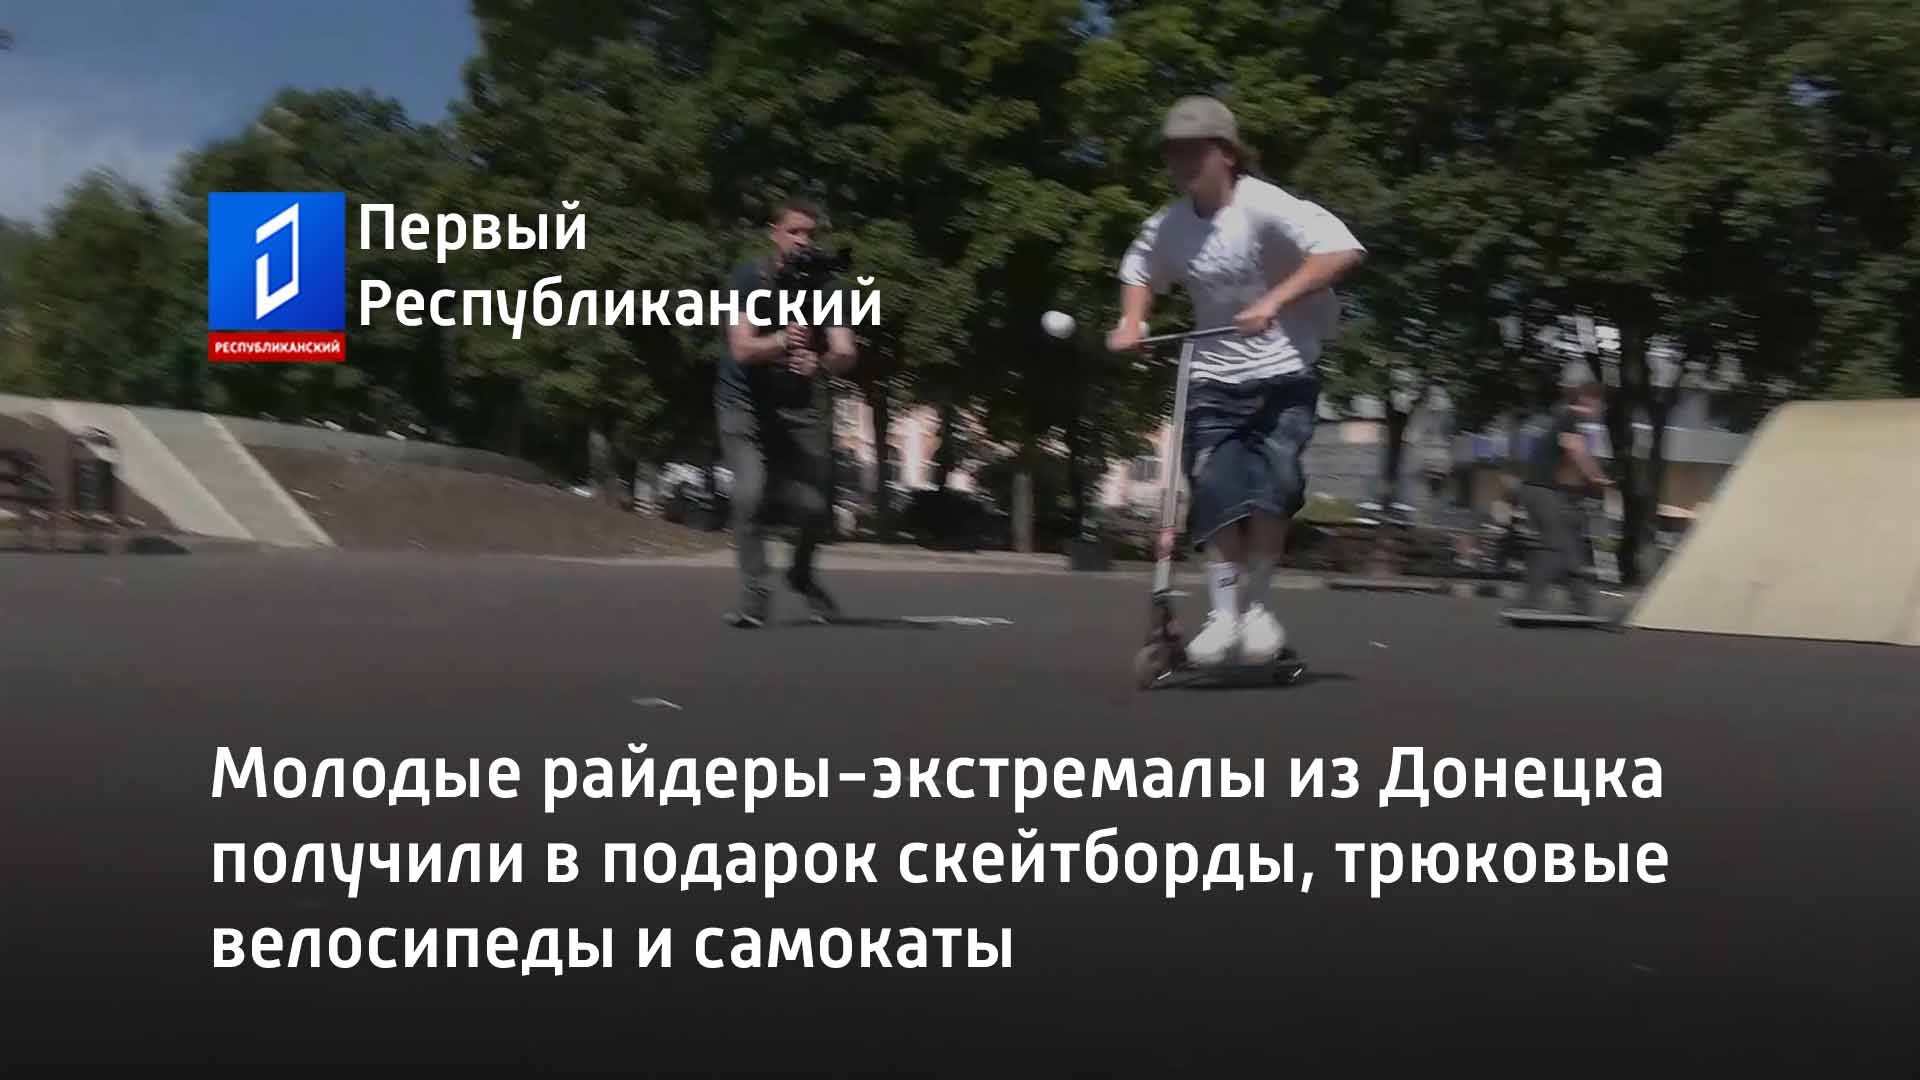 Молодые райдеры-экстремалы из Донецка получили в подарок скейтборды, трюковые велосипеды и самокаты